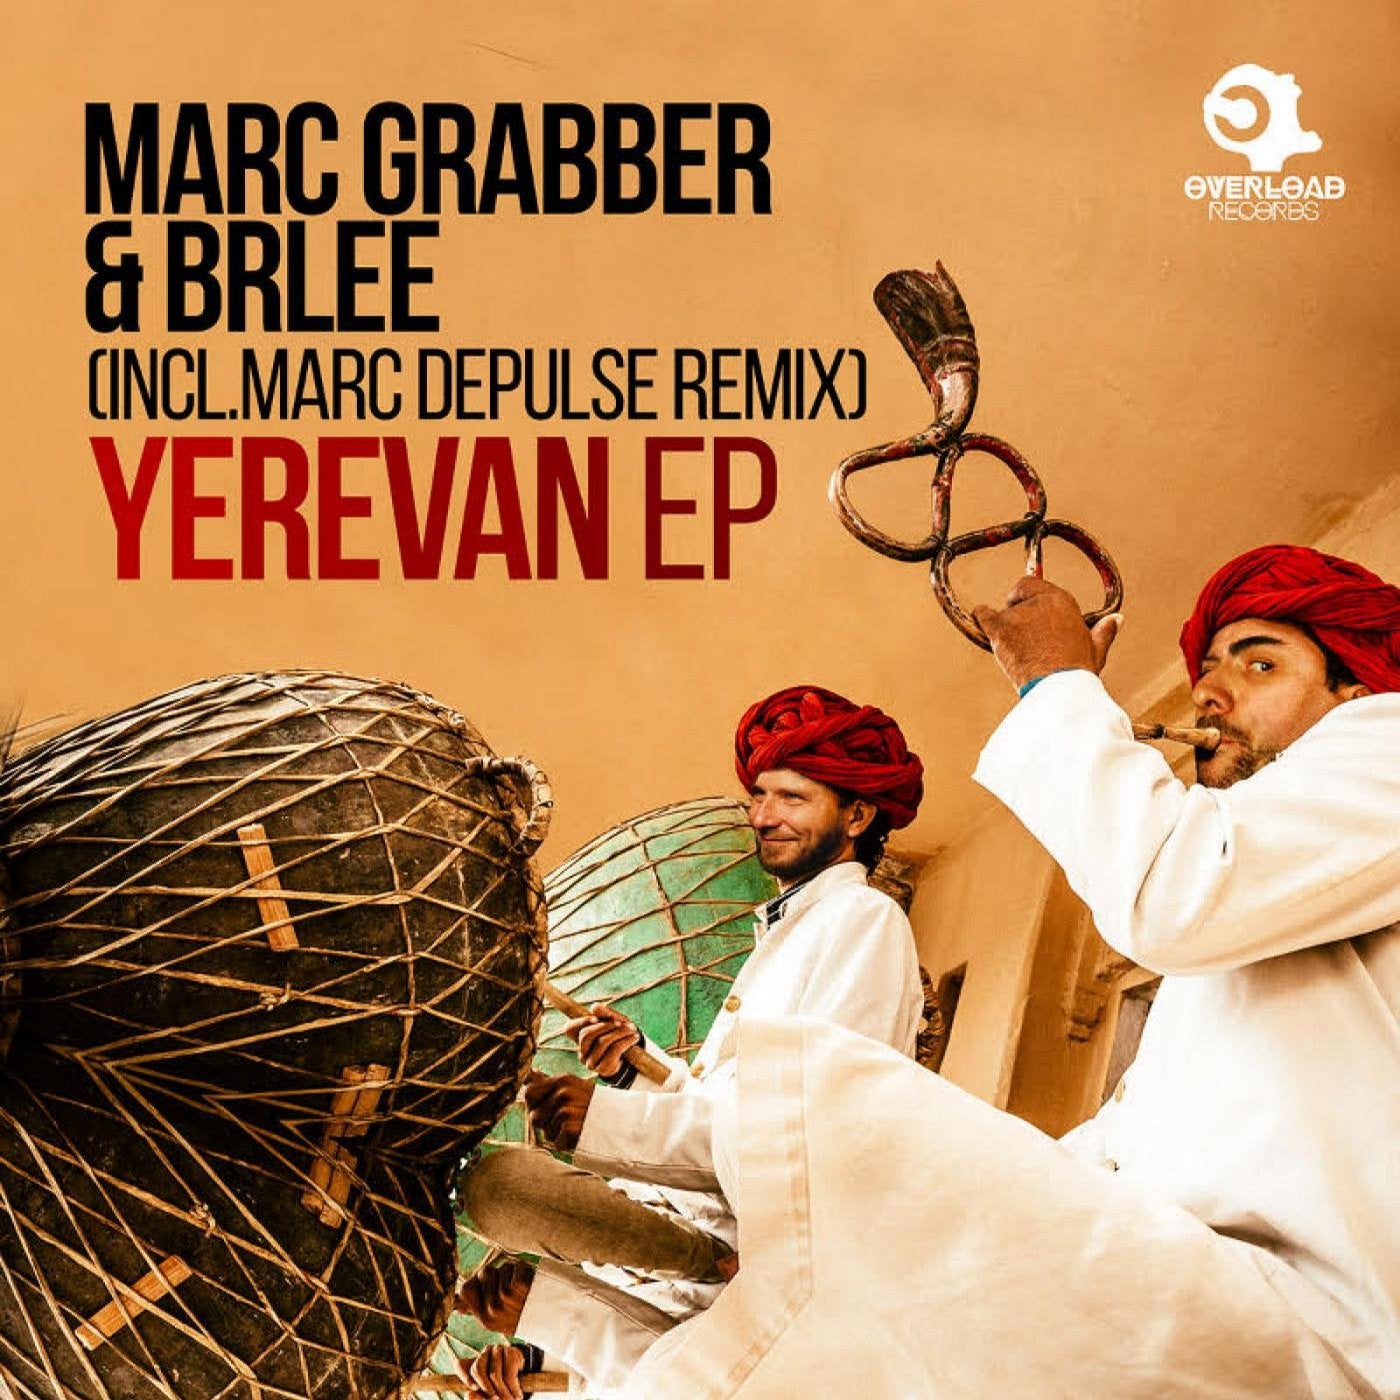 Yerevan EP (incl. Marc DePulse Remix)